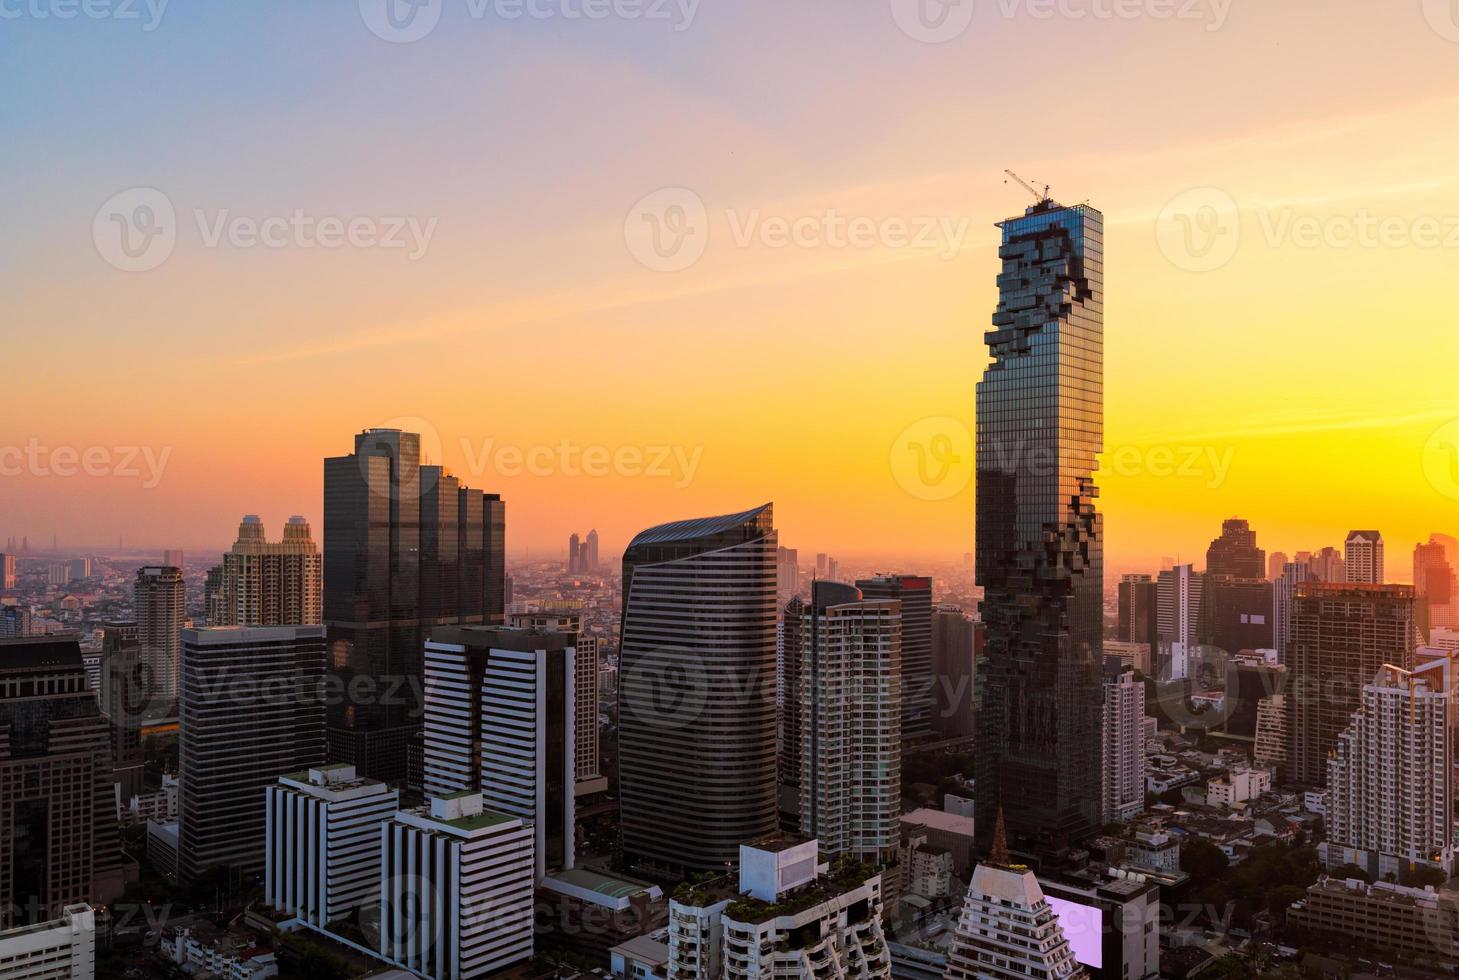 vue sur la ville de bangkok immeuble d'affaires de bureaux modernes dans la zone d'affaires à bangkok, thaïlande. Bangkok est la capitale et la ville la plus peuplée de Thaïlande et la ville la plus peuplée d'Asie du Sud-Est. photo